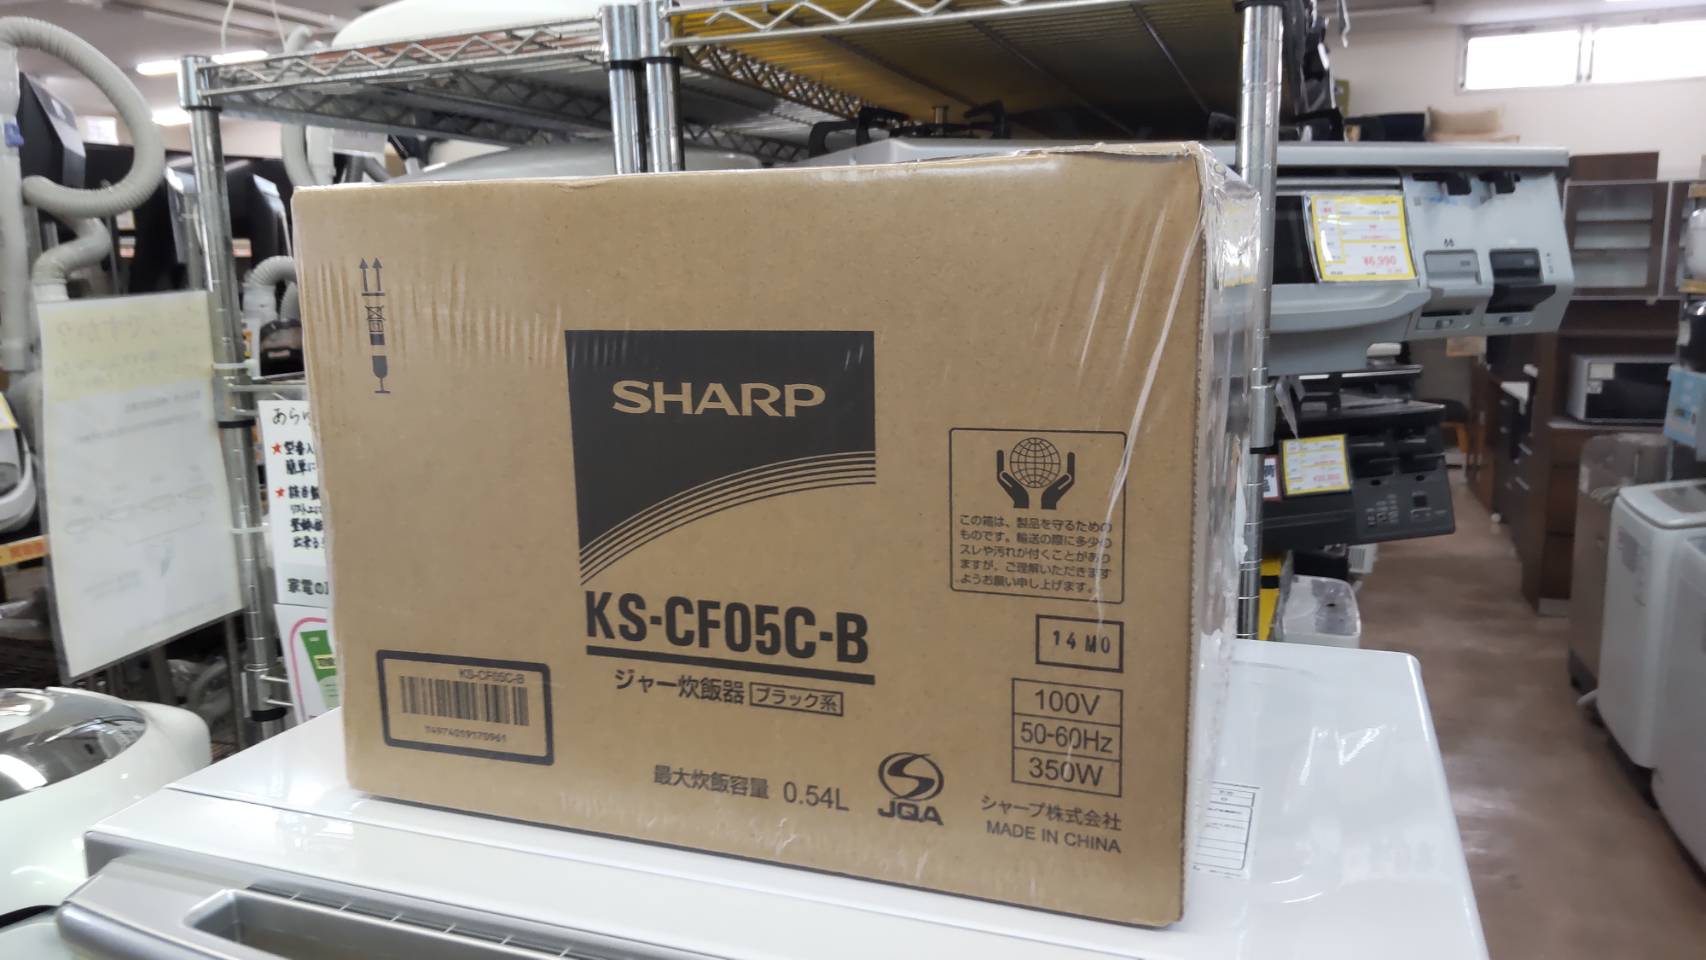 【未使用品 未開封品 SHARP シャープ 3合 炊飯器 KS-CF05C-B 】を買取りさせて頂きました！⭐福岡市 早良区 リサイクルショップ リサイクルマート原店⭐ - リサイクルマートは現在冷蔵庫の買取、家具の買取強化中です！お気軽にお問い合わせください。